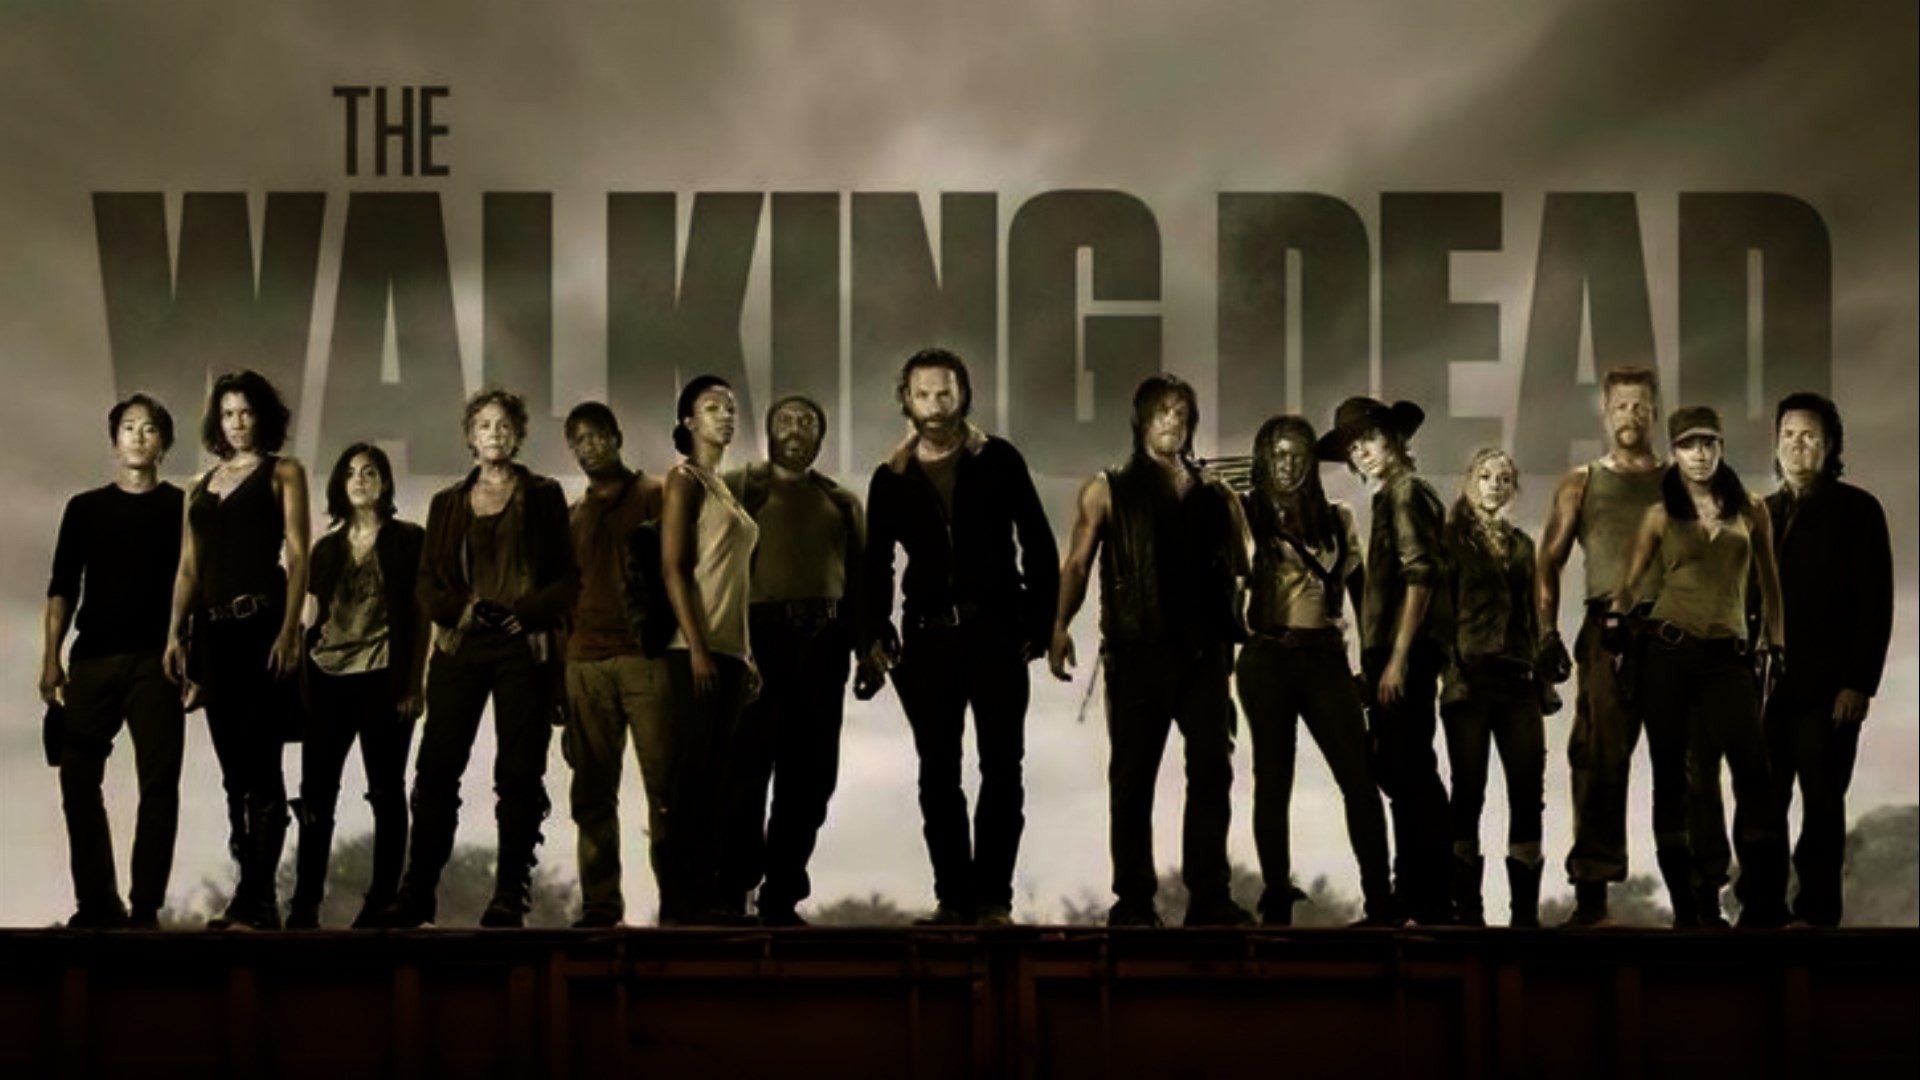 The Walking Dead Wallpaper Image